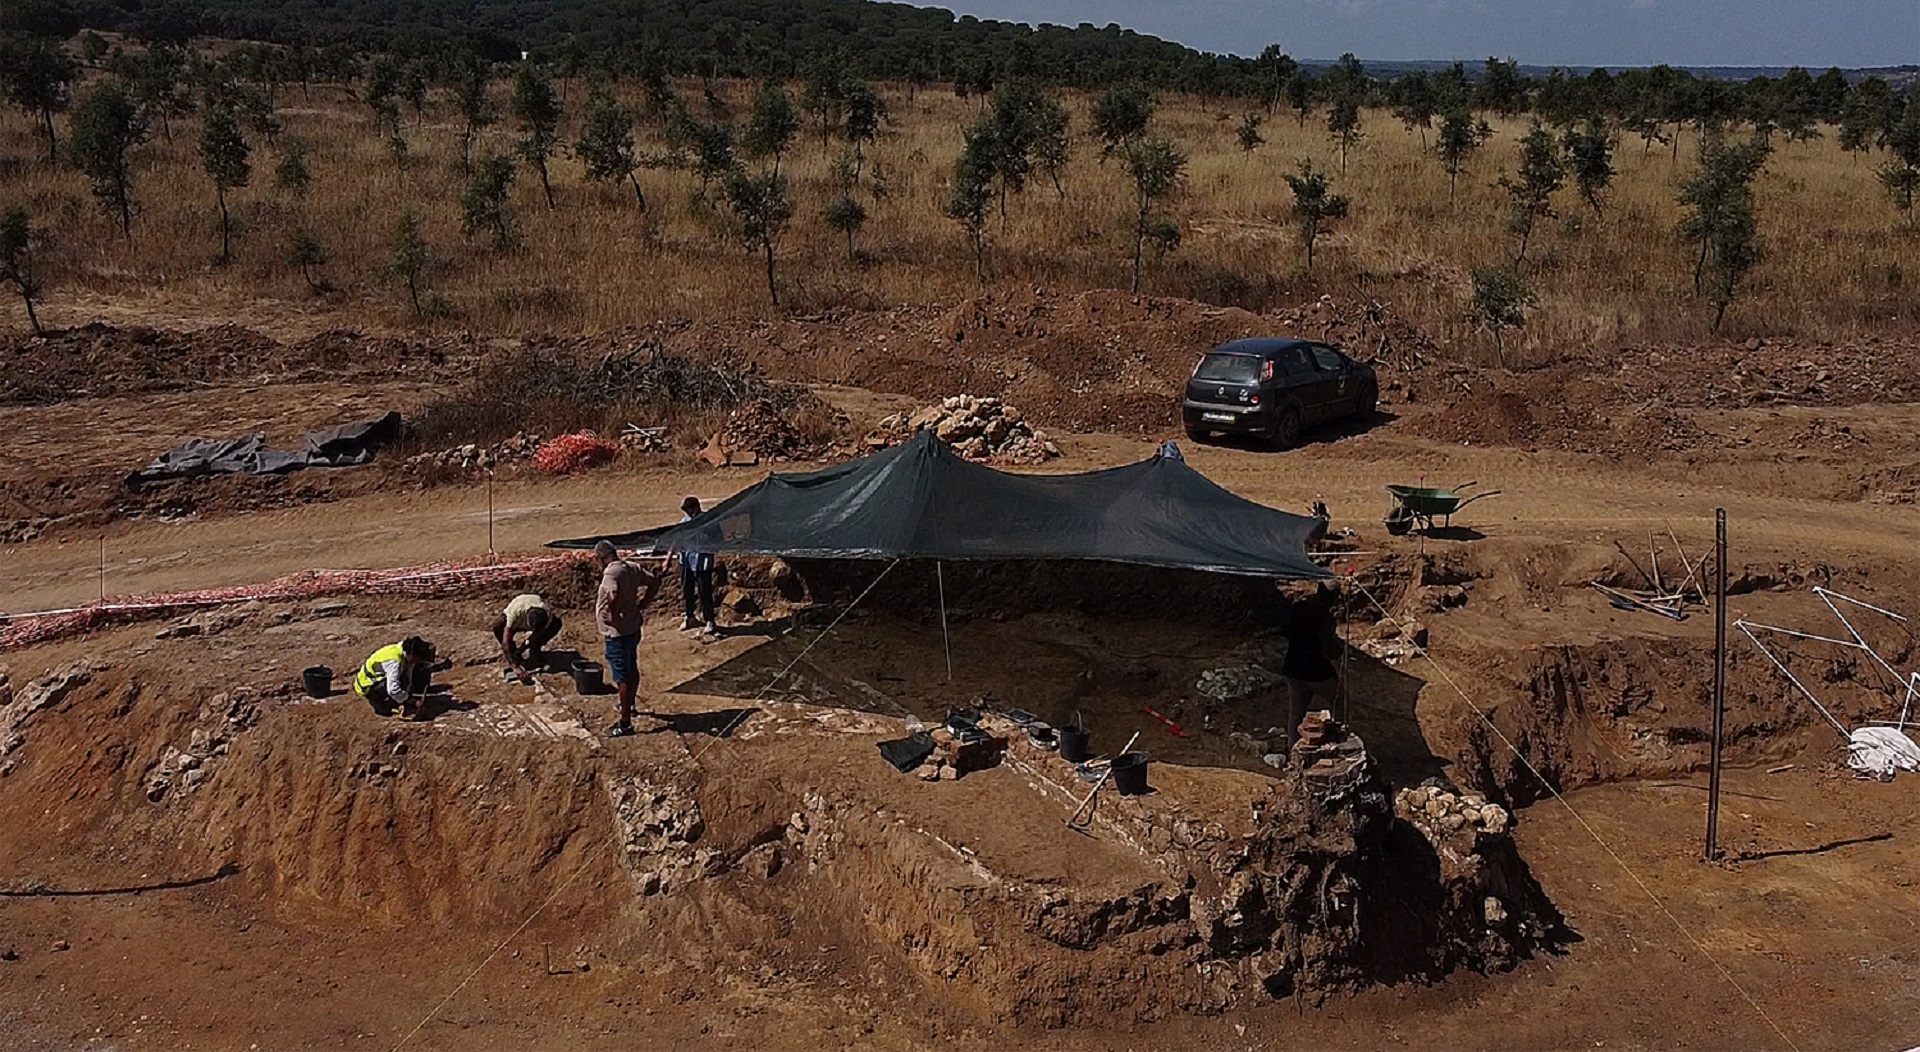 Documentário “A Villa dos Centauros” vai relevar Alcácer do Sal no mapa da arqueolo...